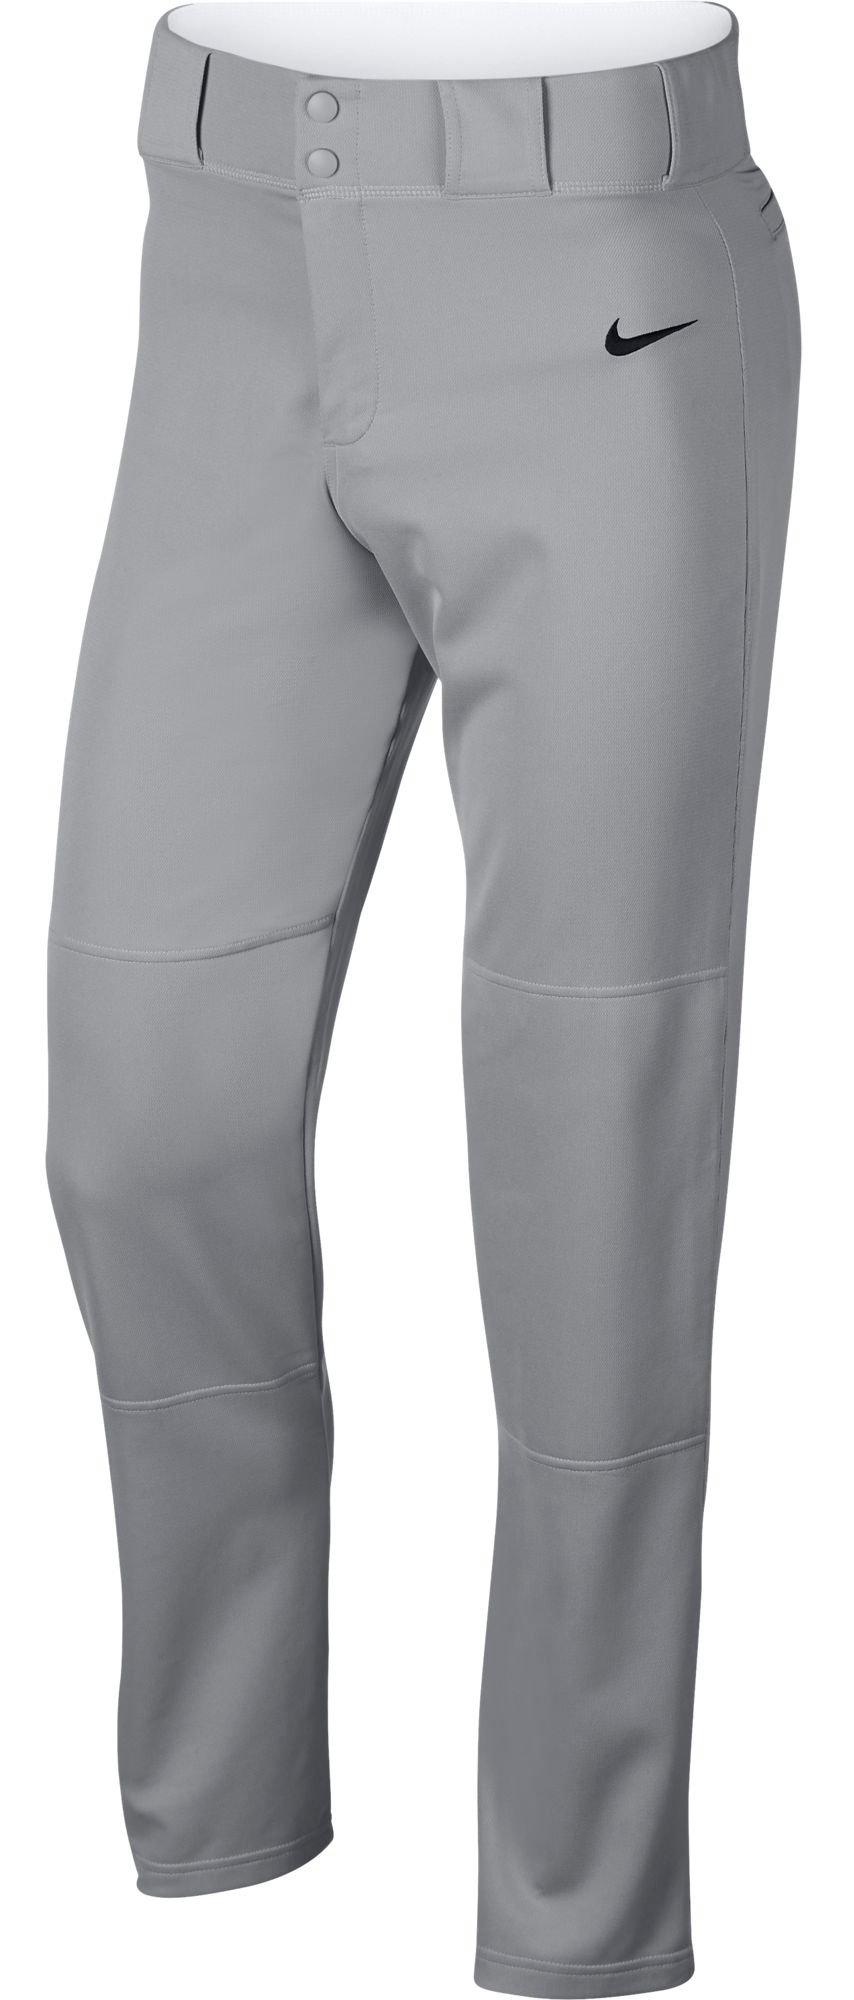 White Size 2XL Baseball & Softball Pants for Men for sale